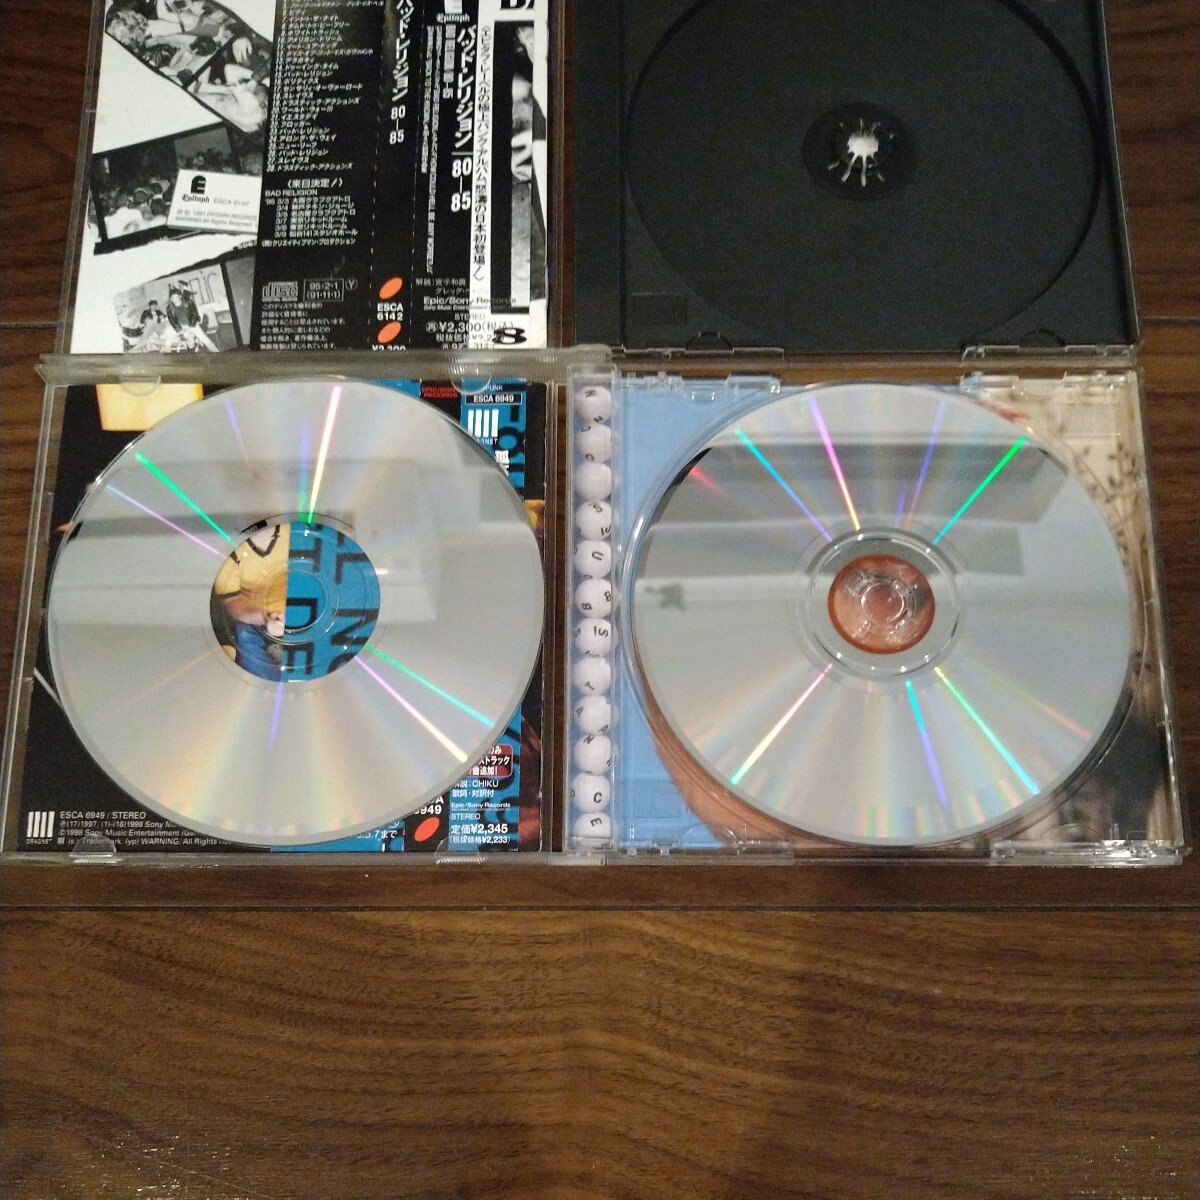 【送料無料】BAD RELIGION CDアルバム 2タイトルセット 80-85 NO SUBSTANCE バッドレリジョン パンクロック